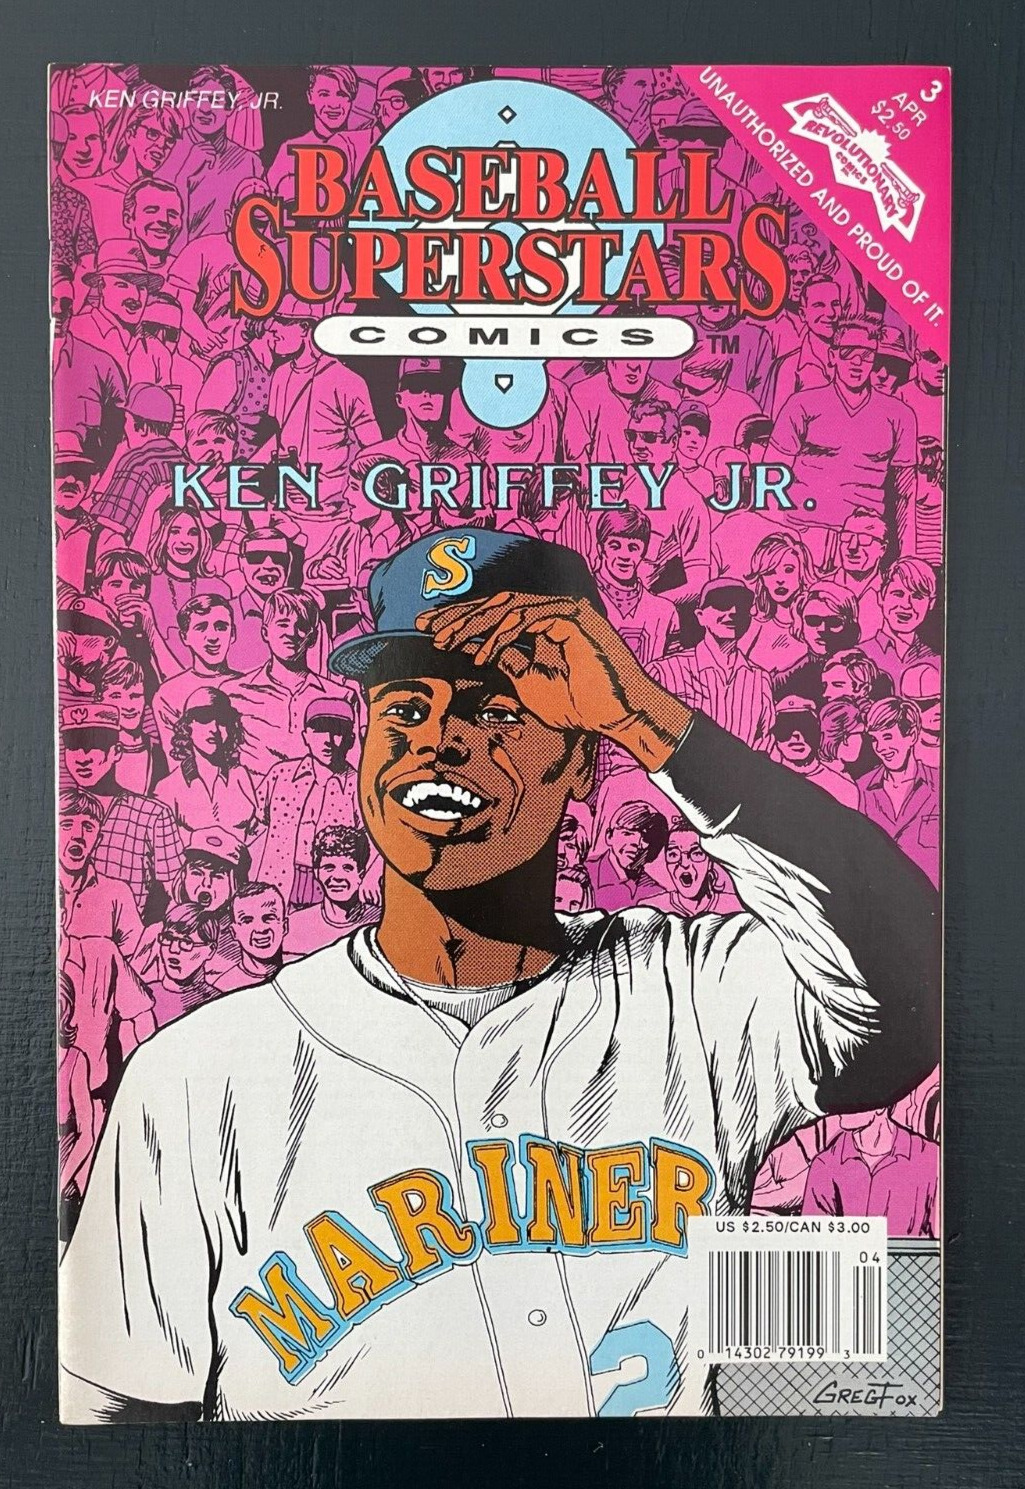 Baseball Superstars Comics Ken Griffey Jr. Newsstand Cover High Grade